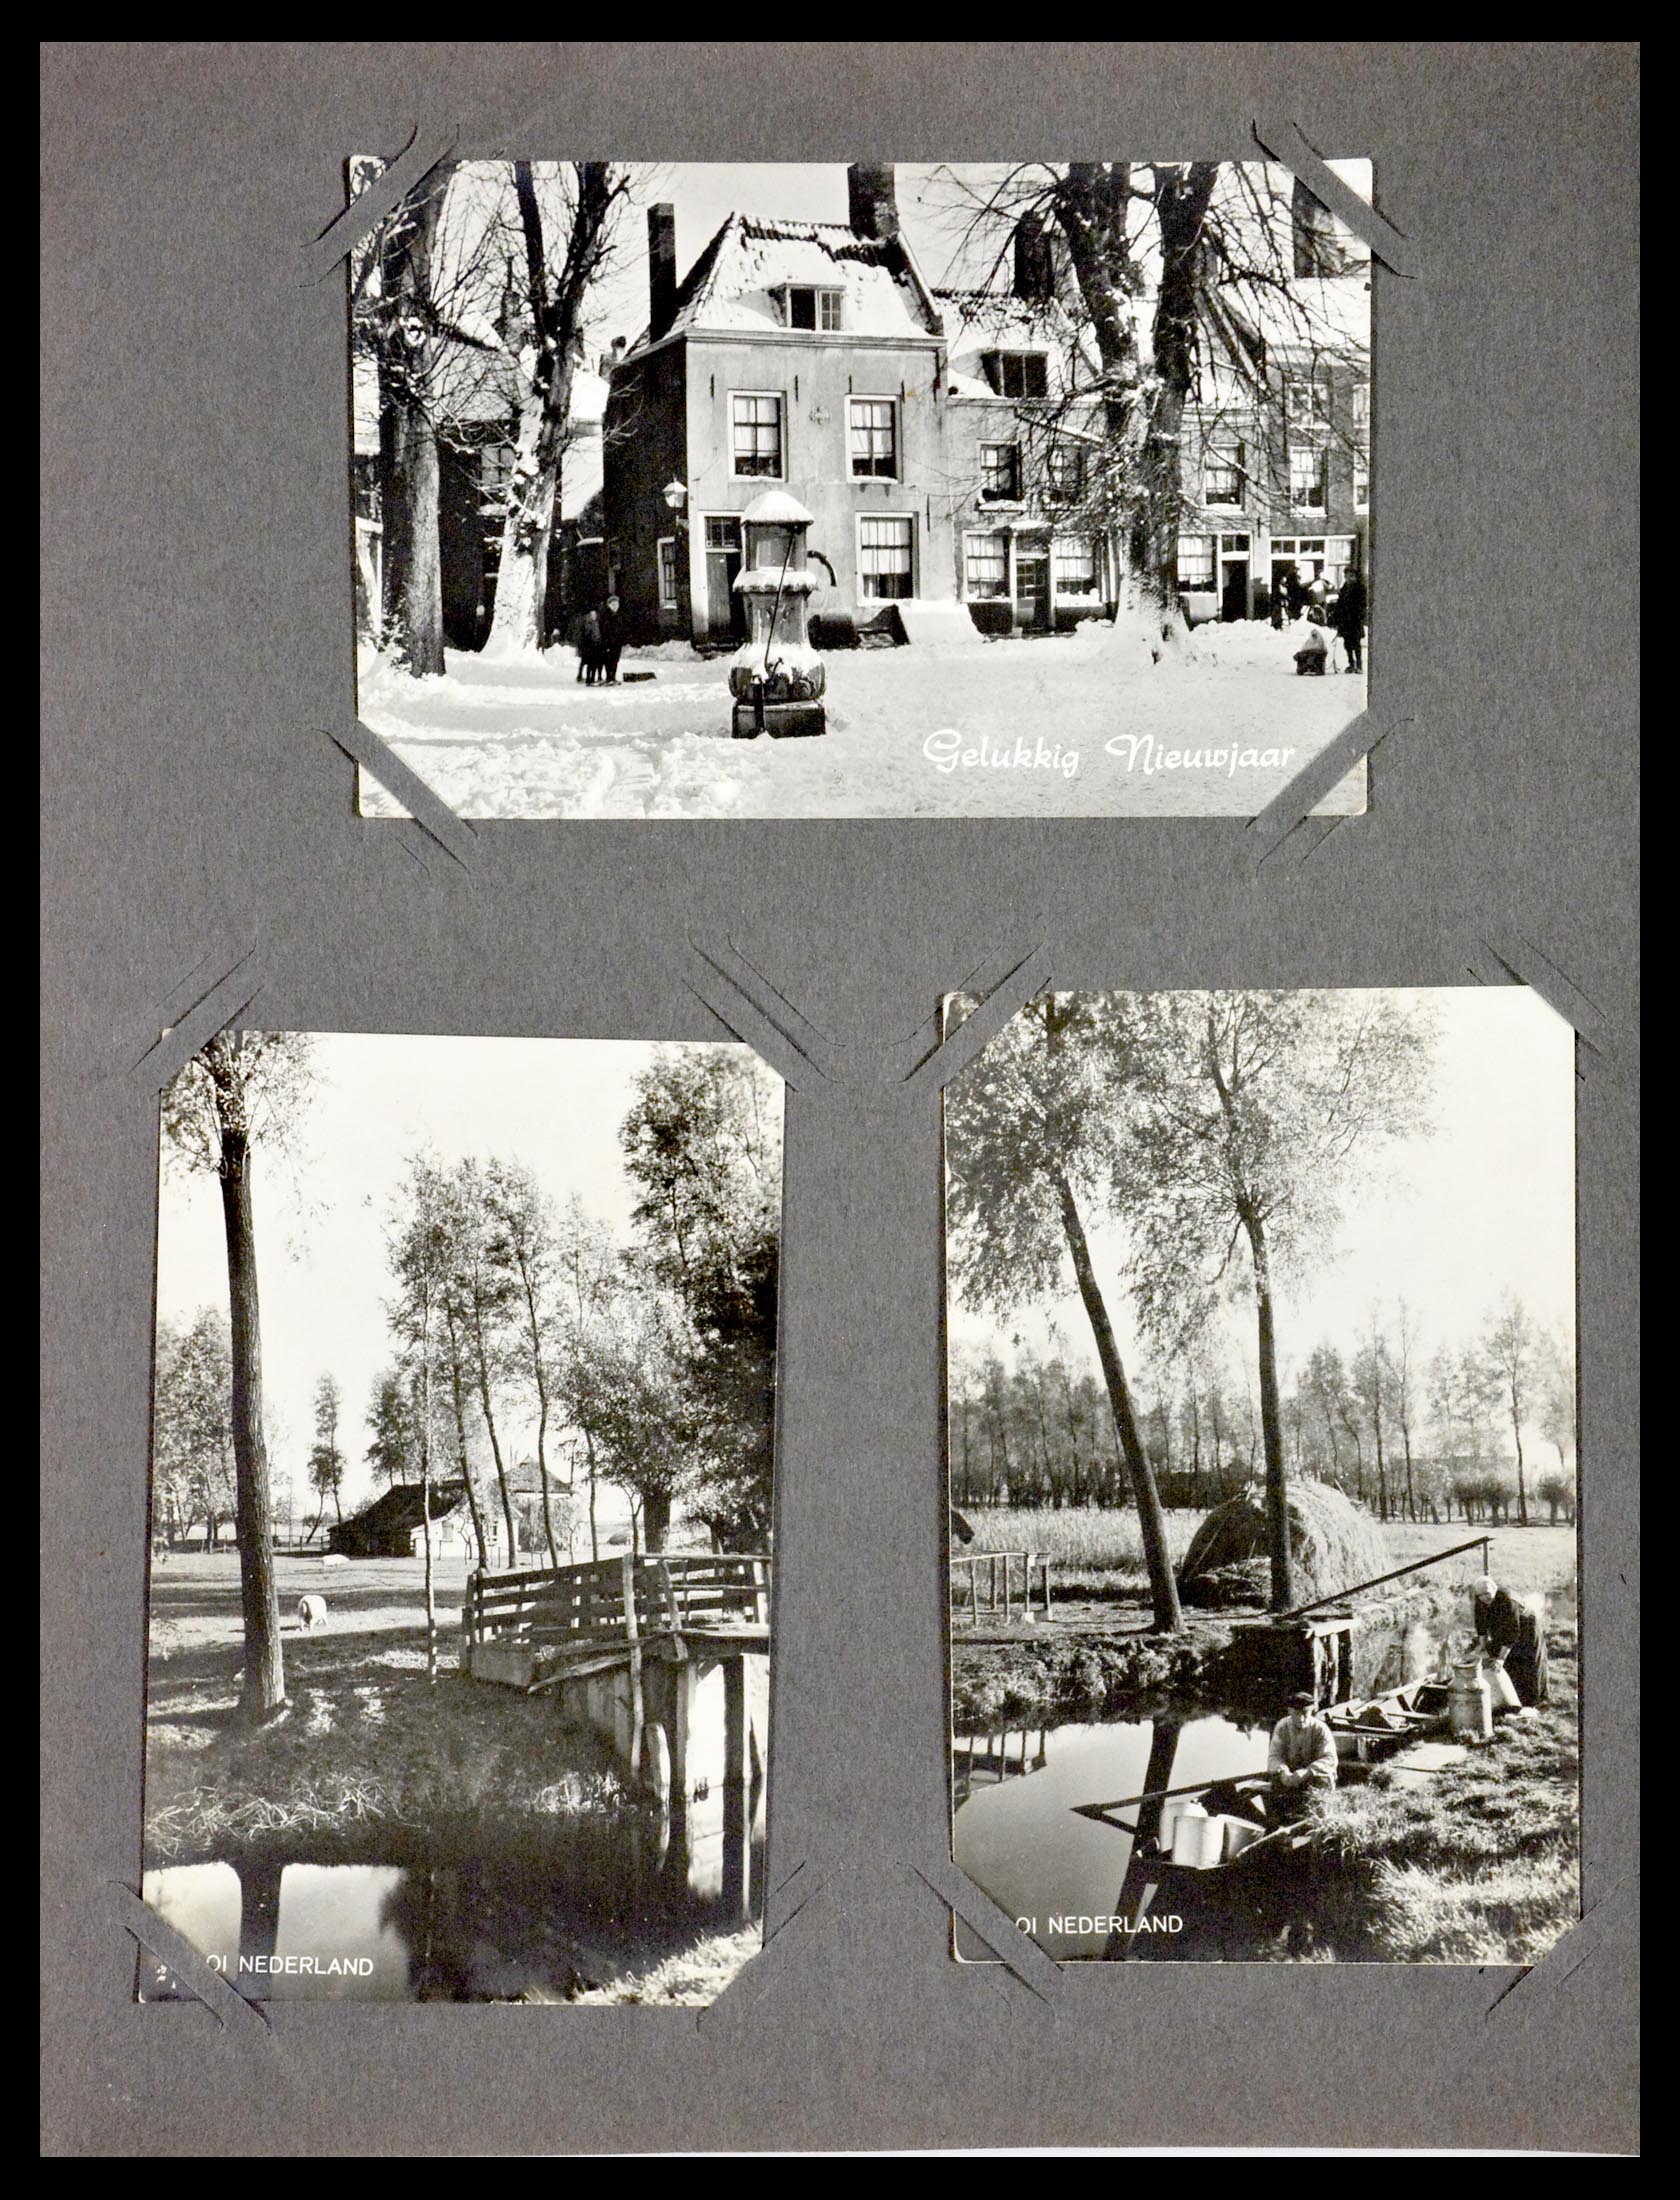 29518 001 - 29518 Nederland ansichtkaarten 1939-1940.